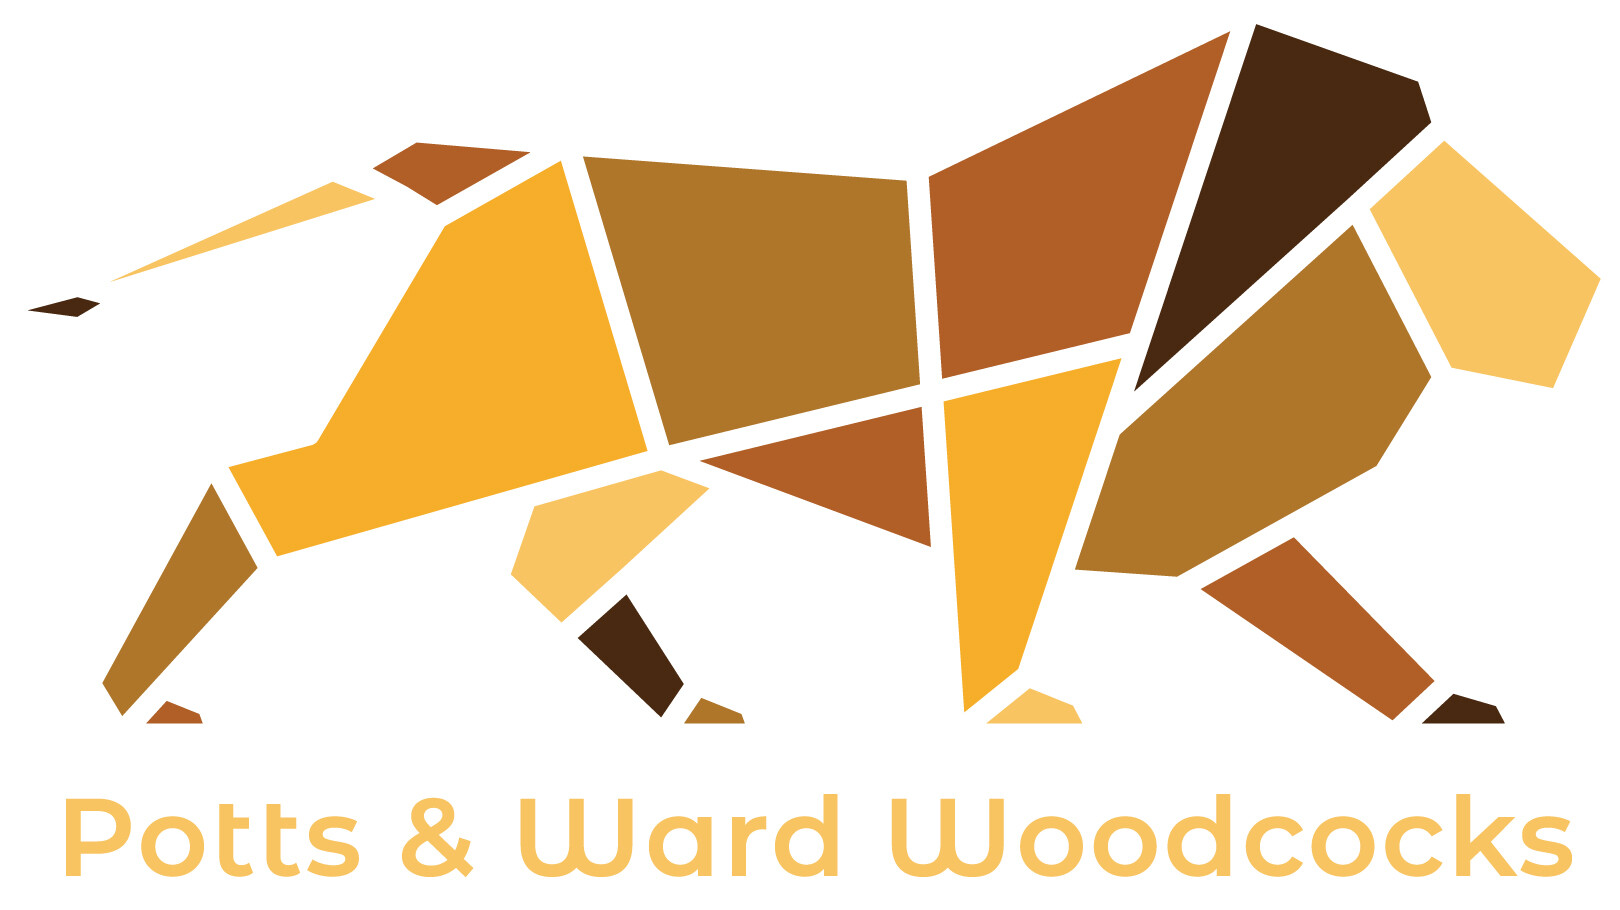 Potts & Ward Woodcocks Ltd